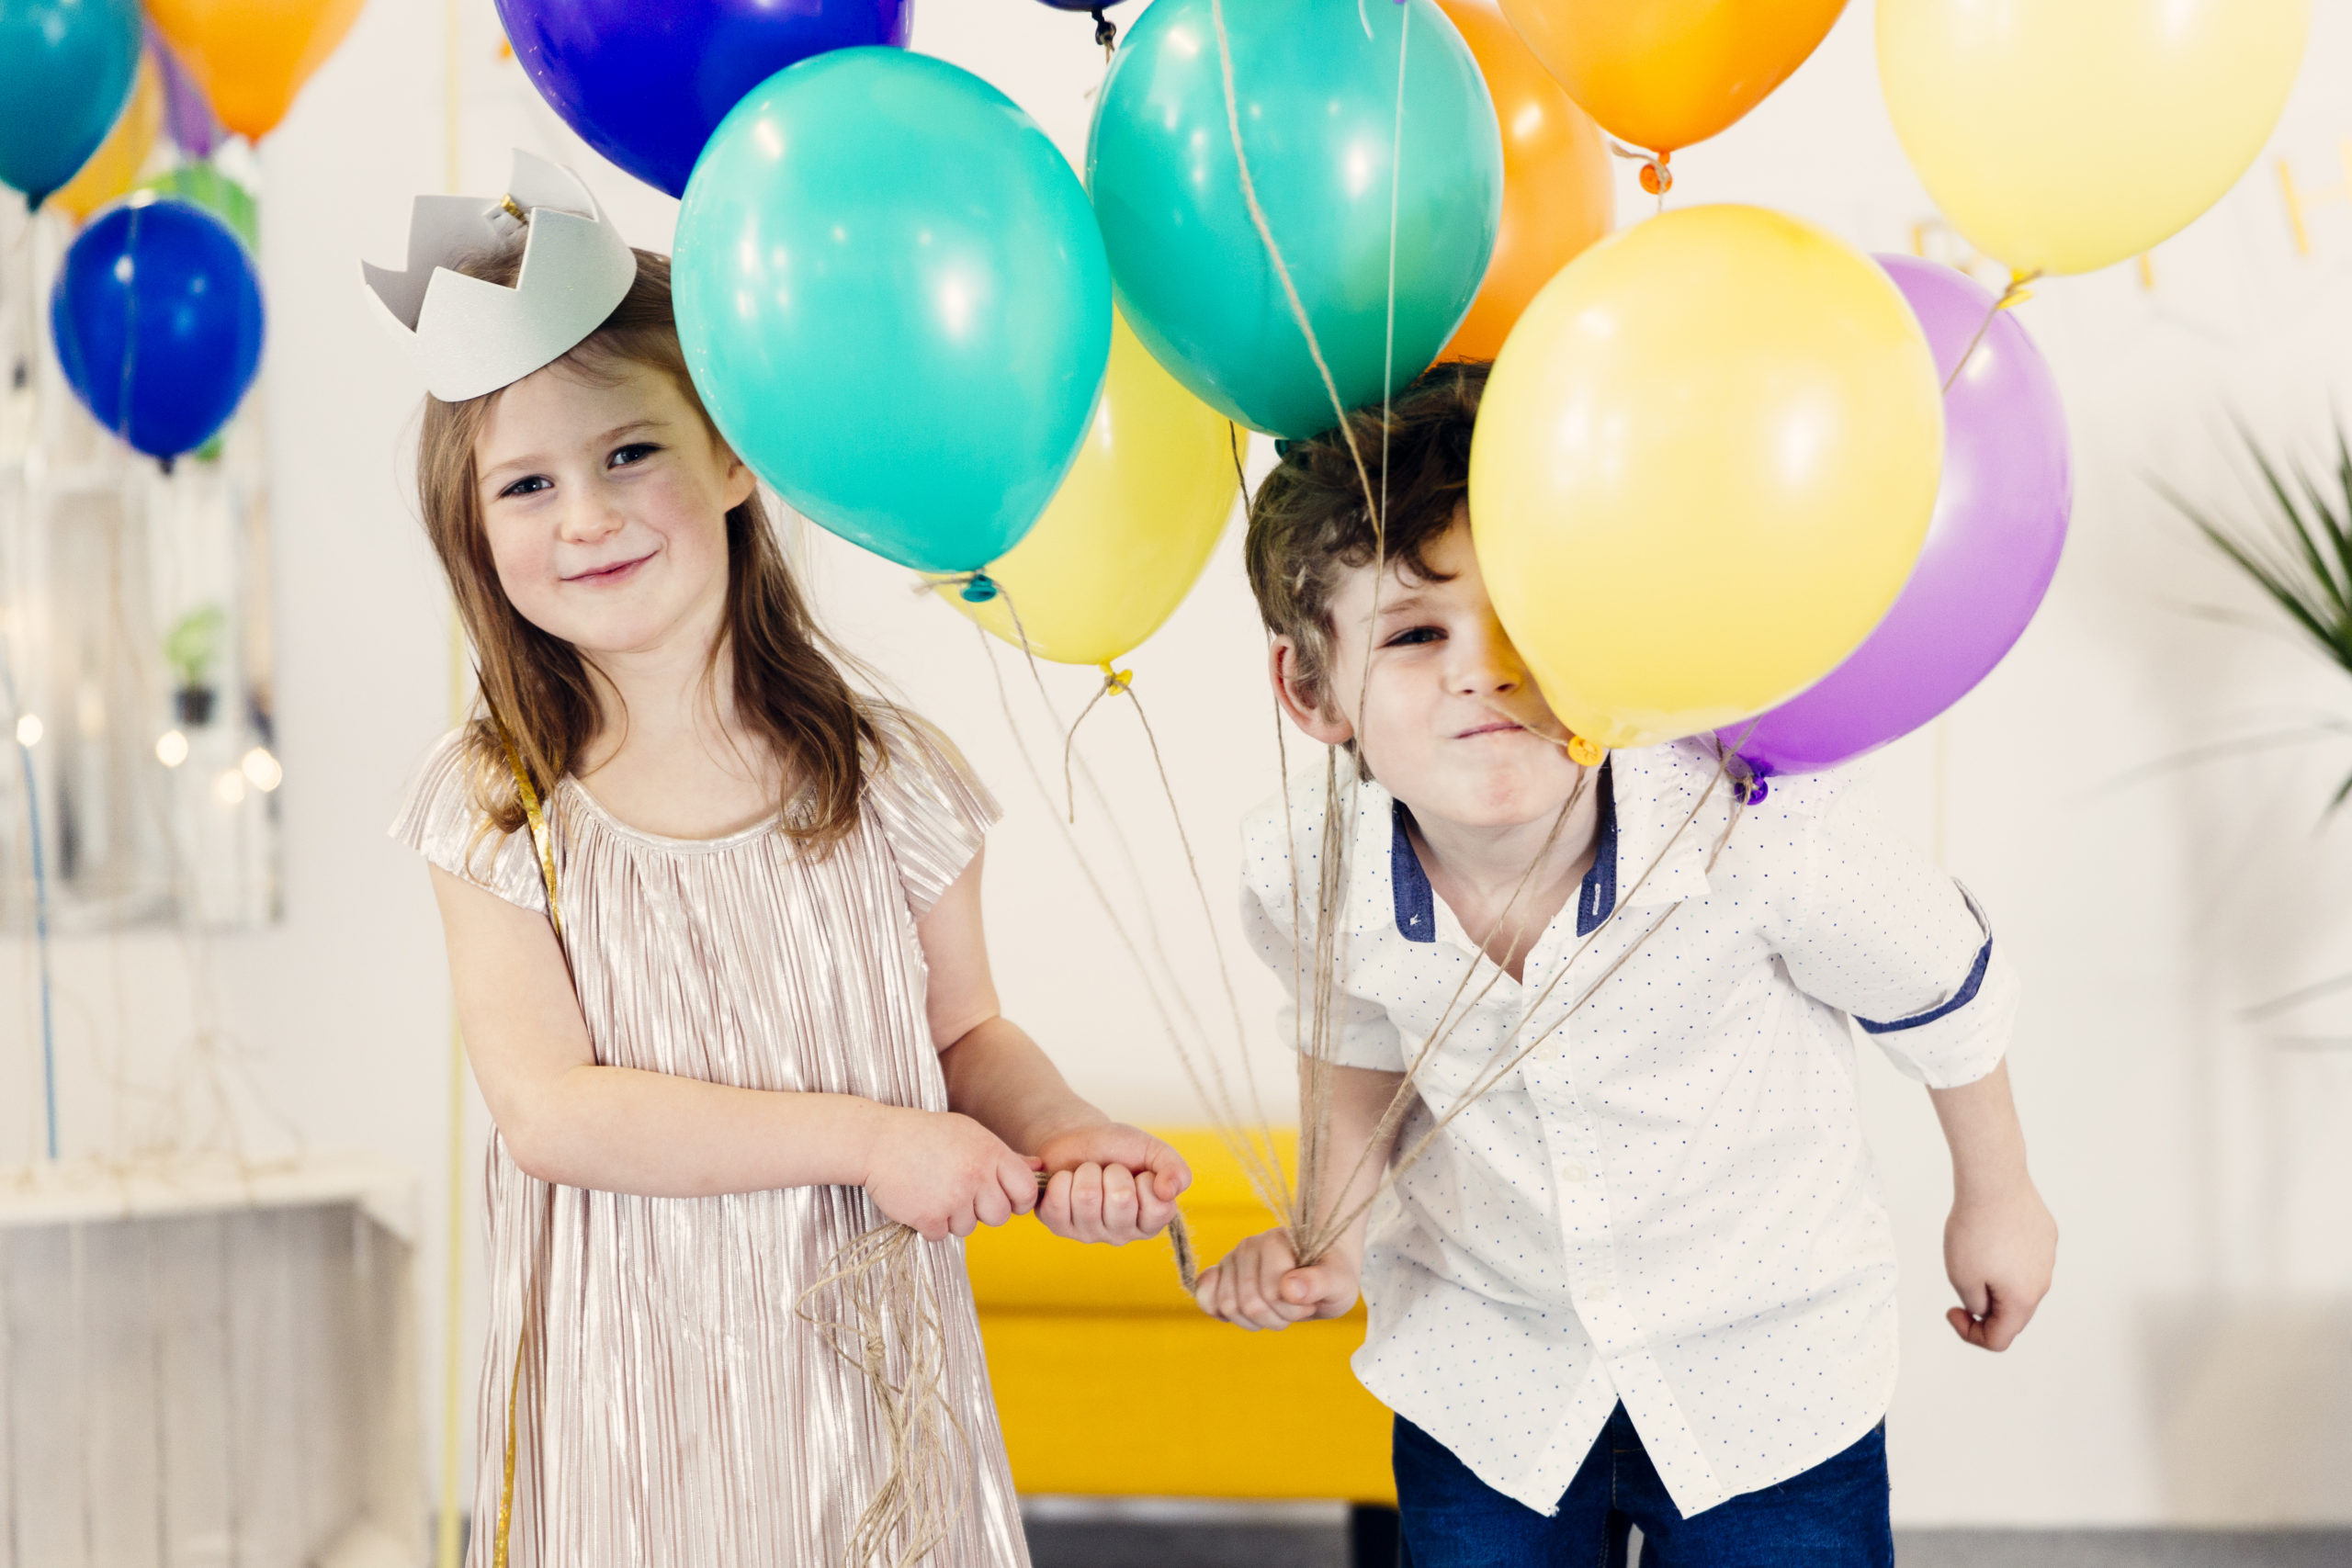 Танец с воздушными шарами. Дети с воздушными шарами. Шарики воздушные для мальчика. Дети с воздушными шариками. Мальчик с воздушными шарами.